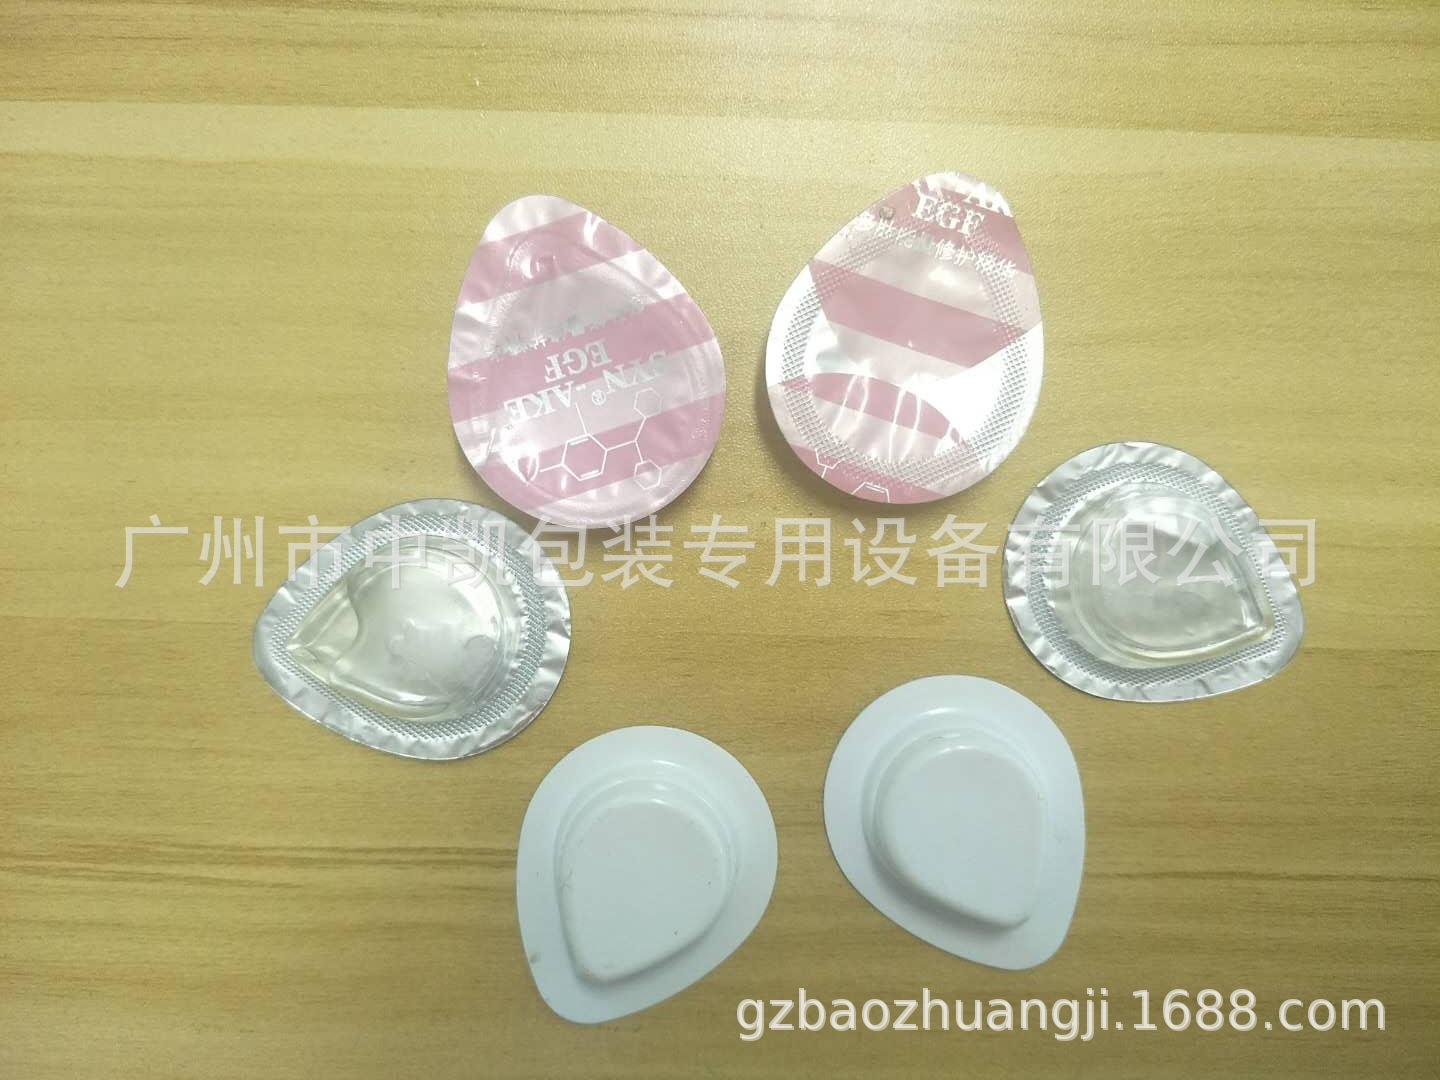 【厂家】广州护肤水/果冻/汽车香水液体泡罩机 欢迎来公司看机示例图15